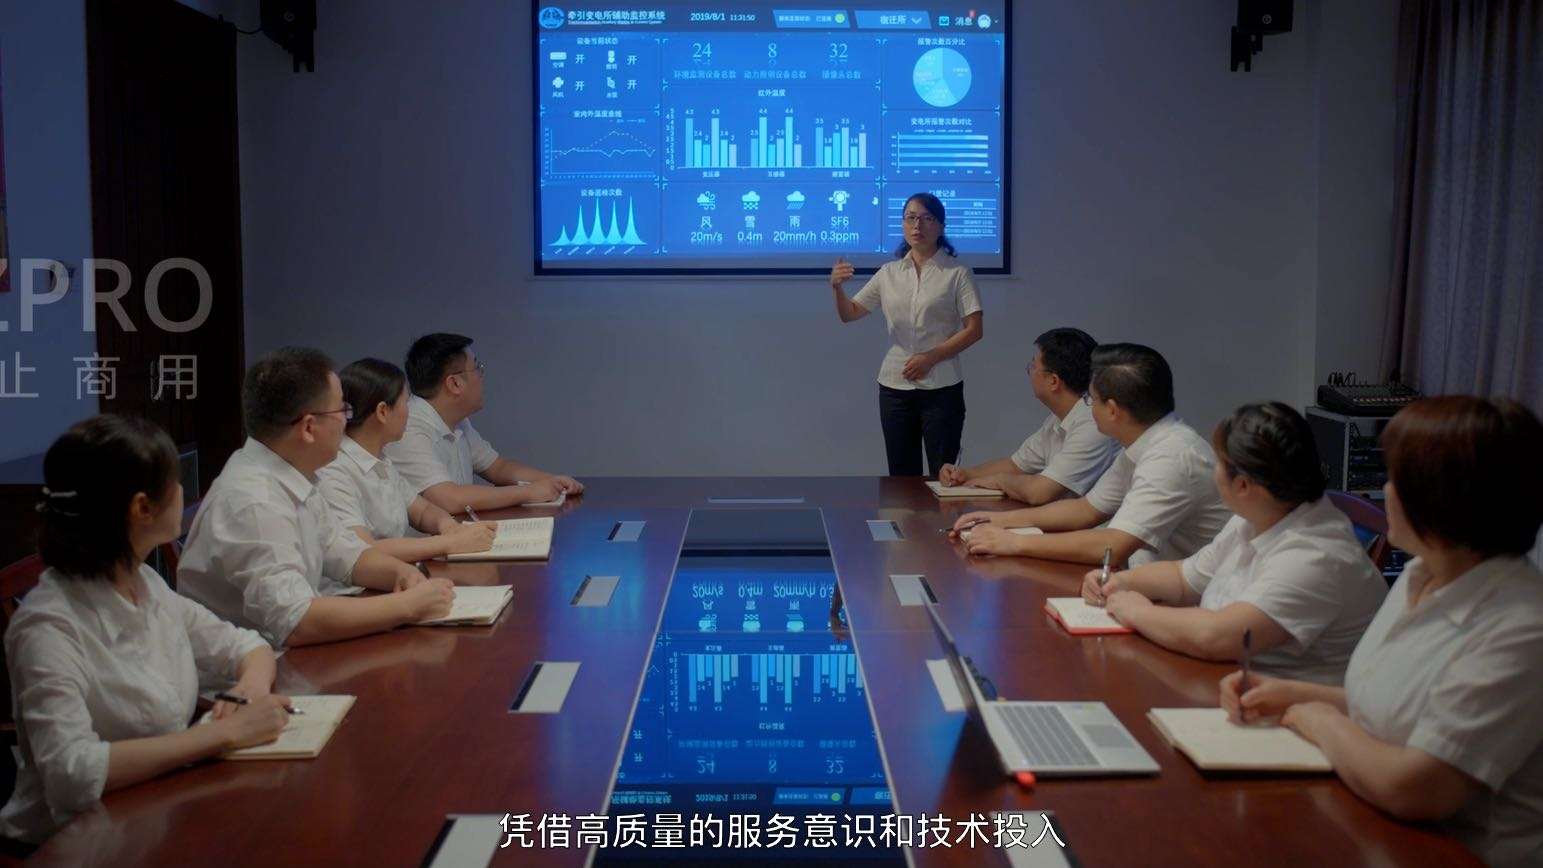 中铁电化通号设备有限公司宣传片节选